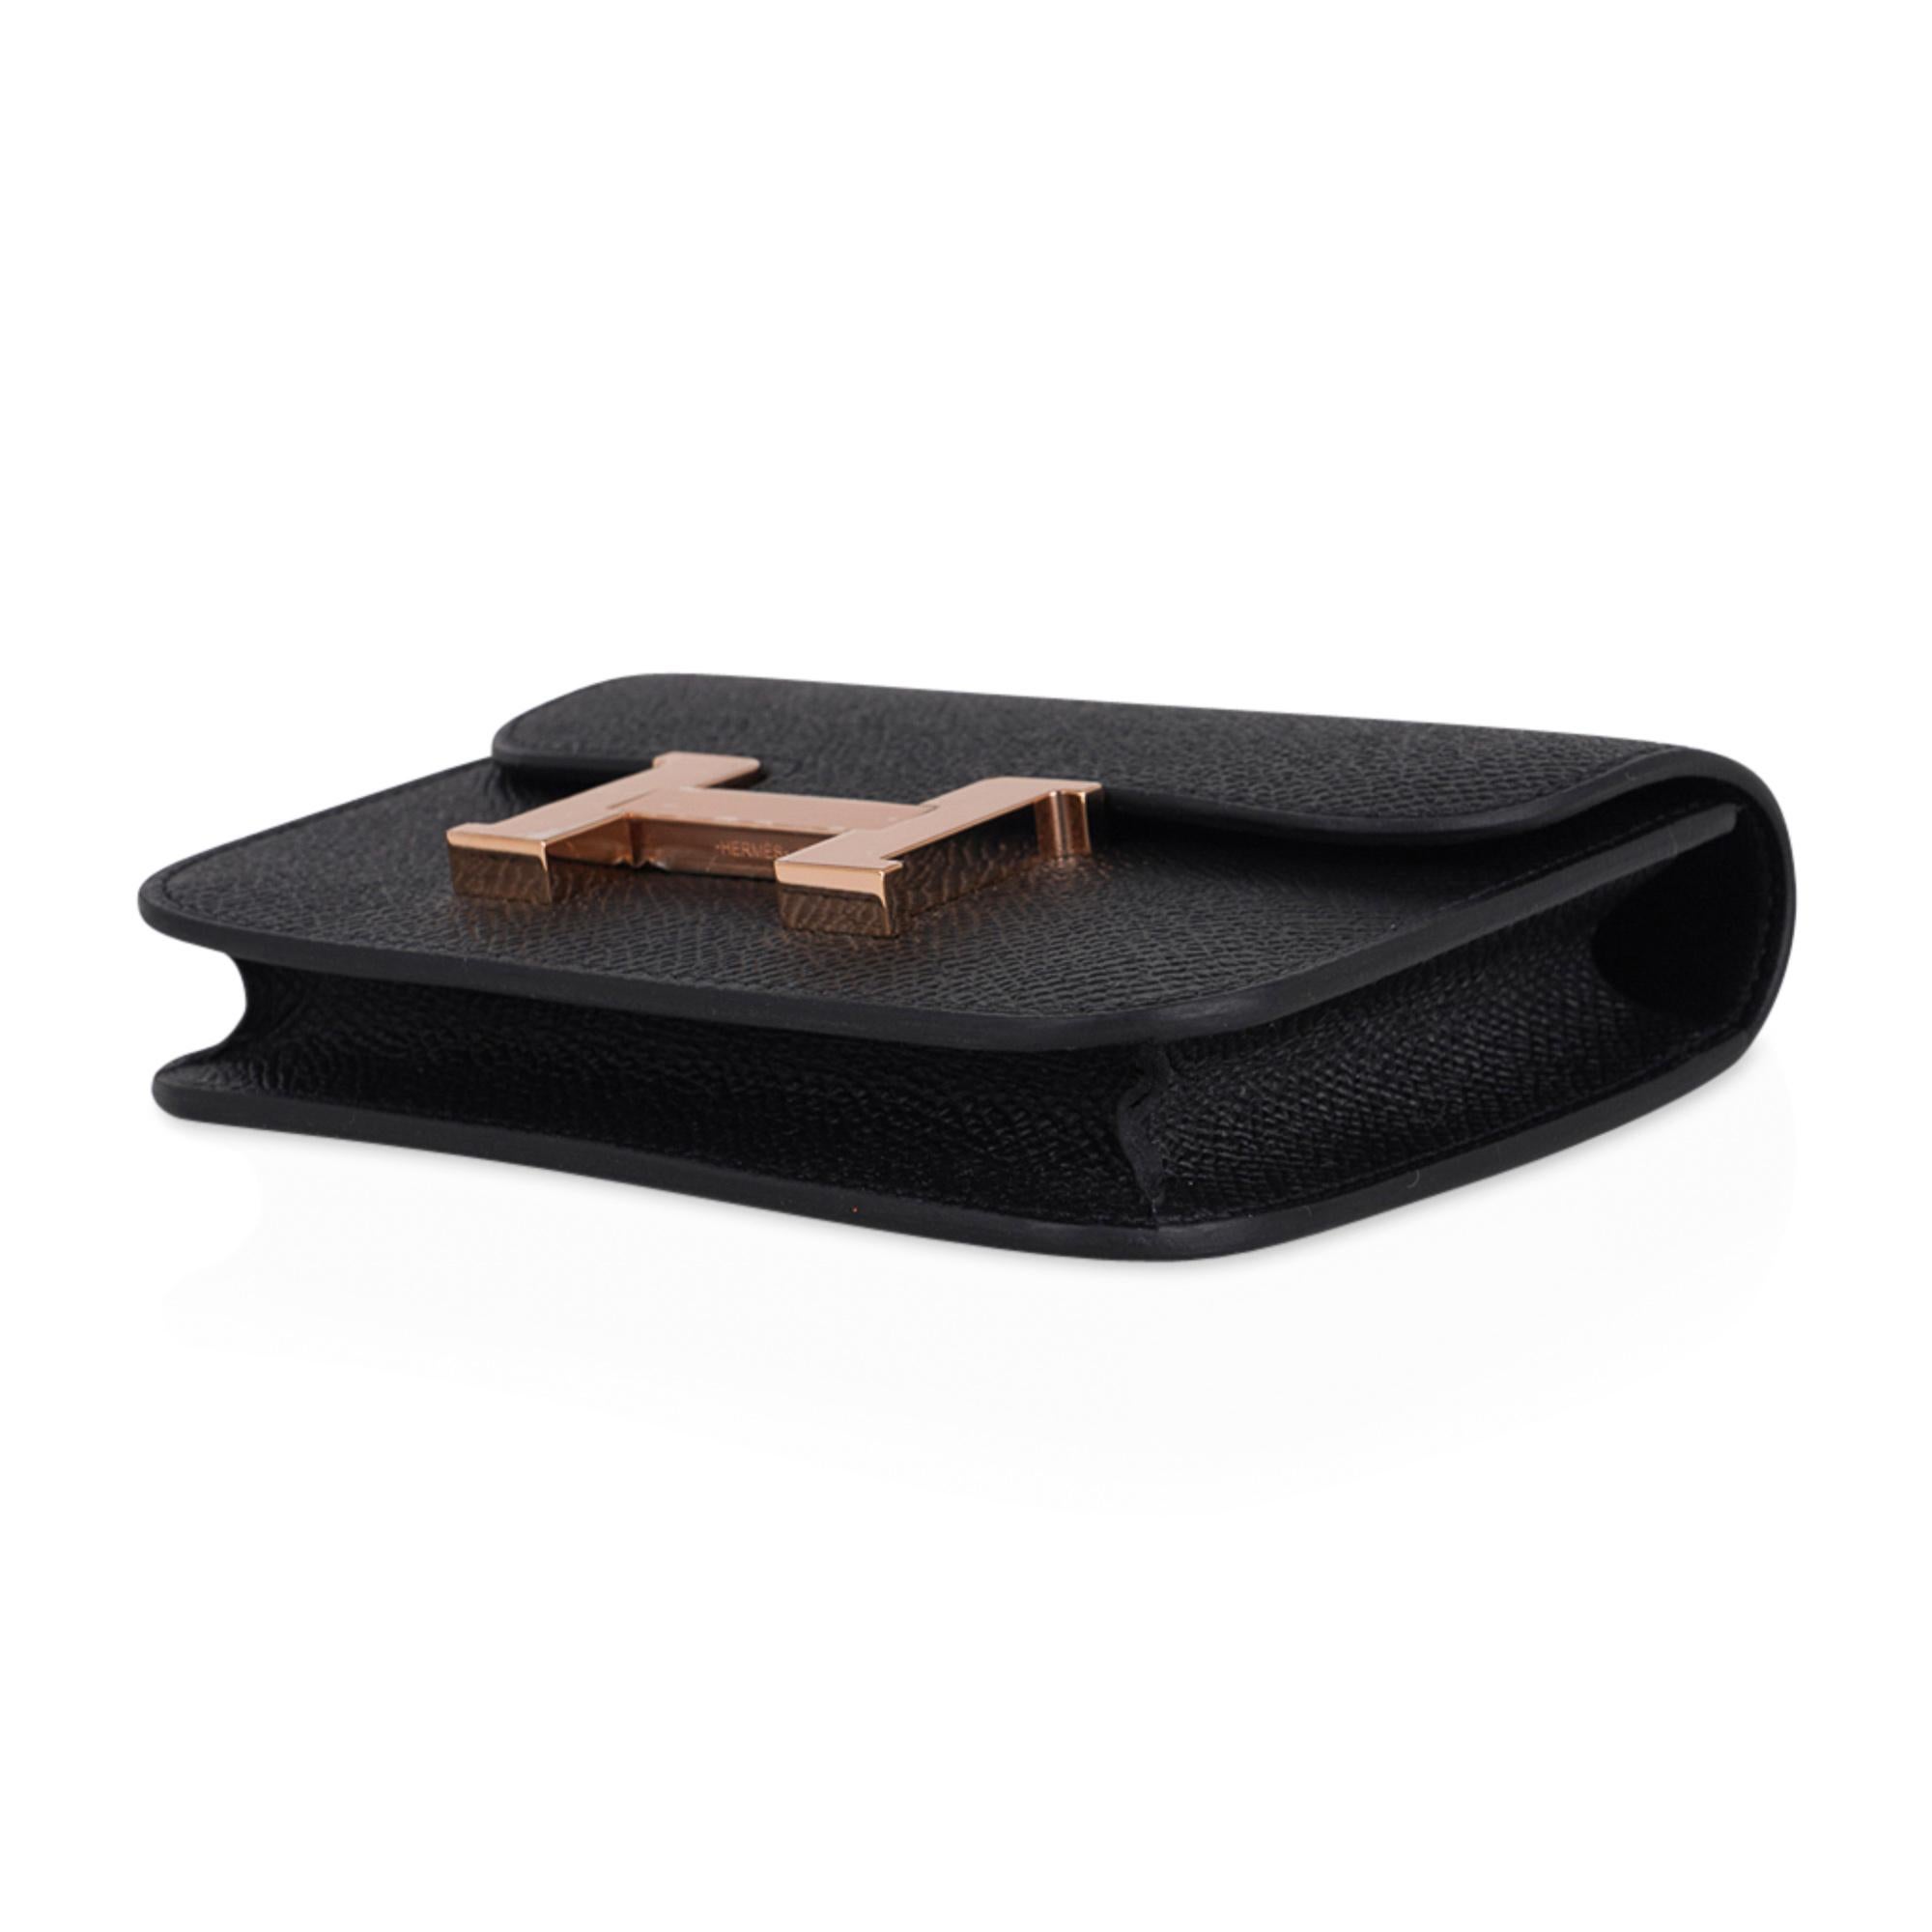 Hermes Constance Slim Wallet Waist Belt Bag Black Rose Gold Hardware 2